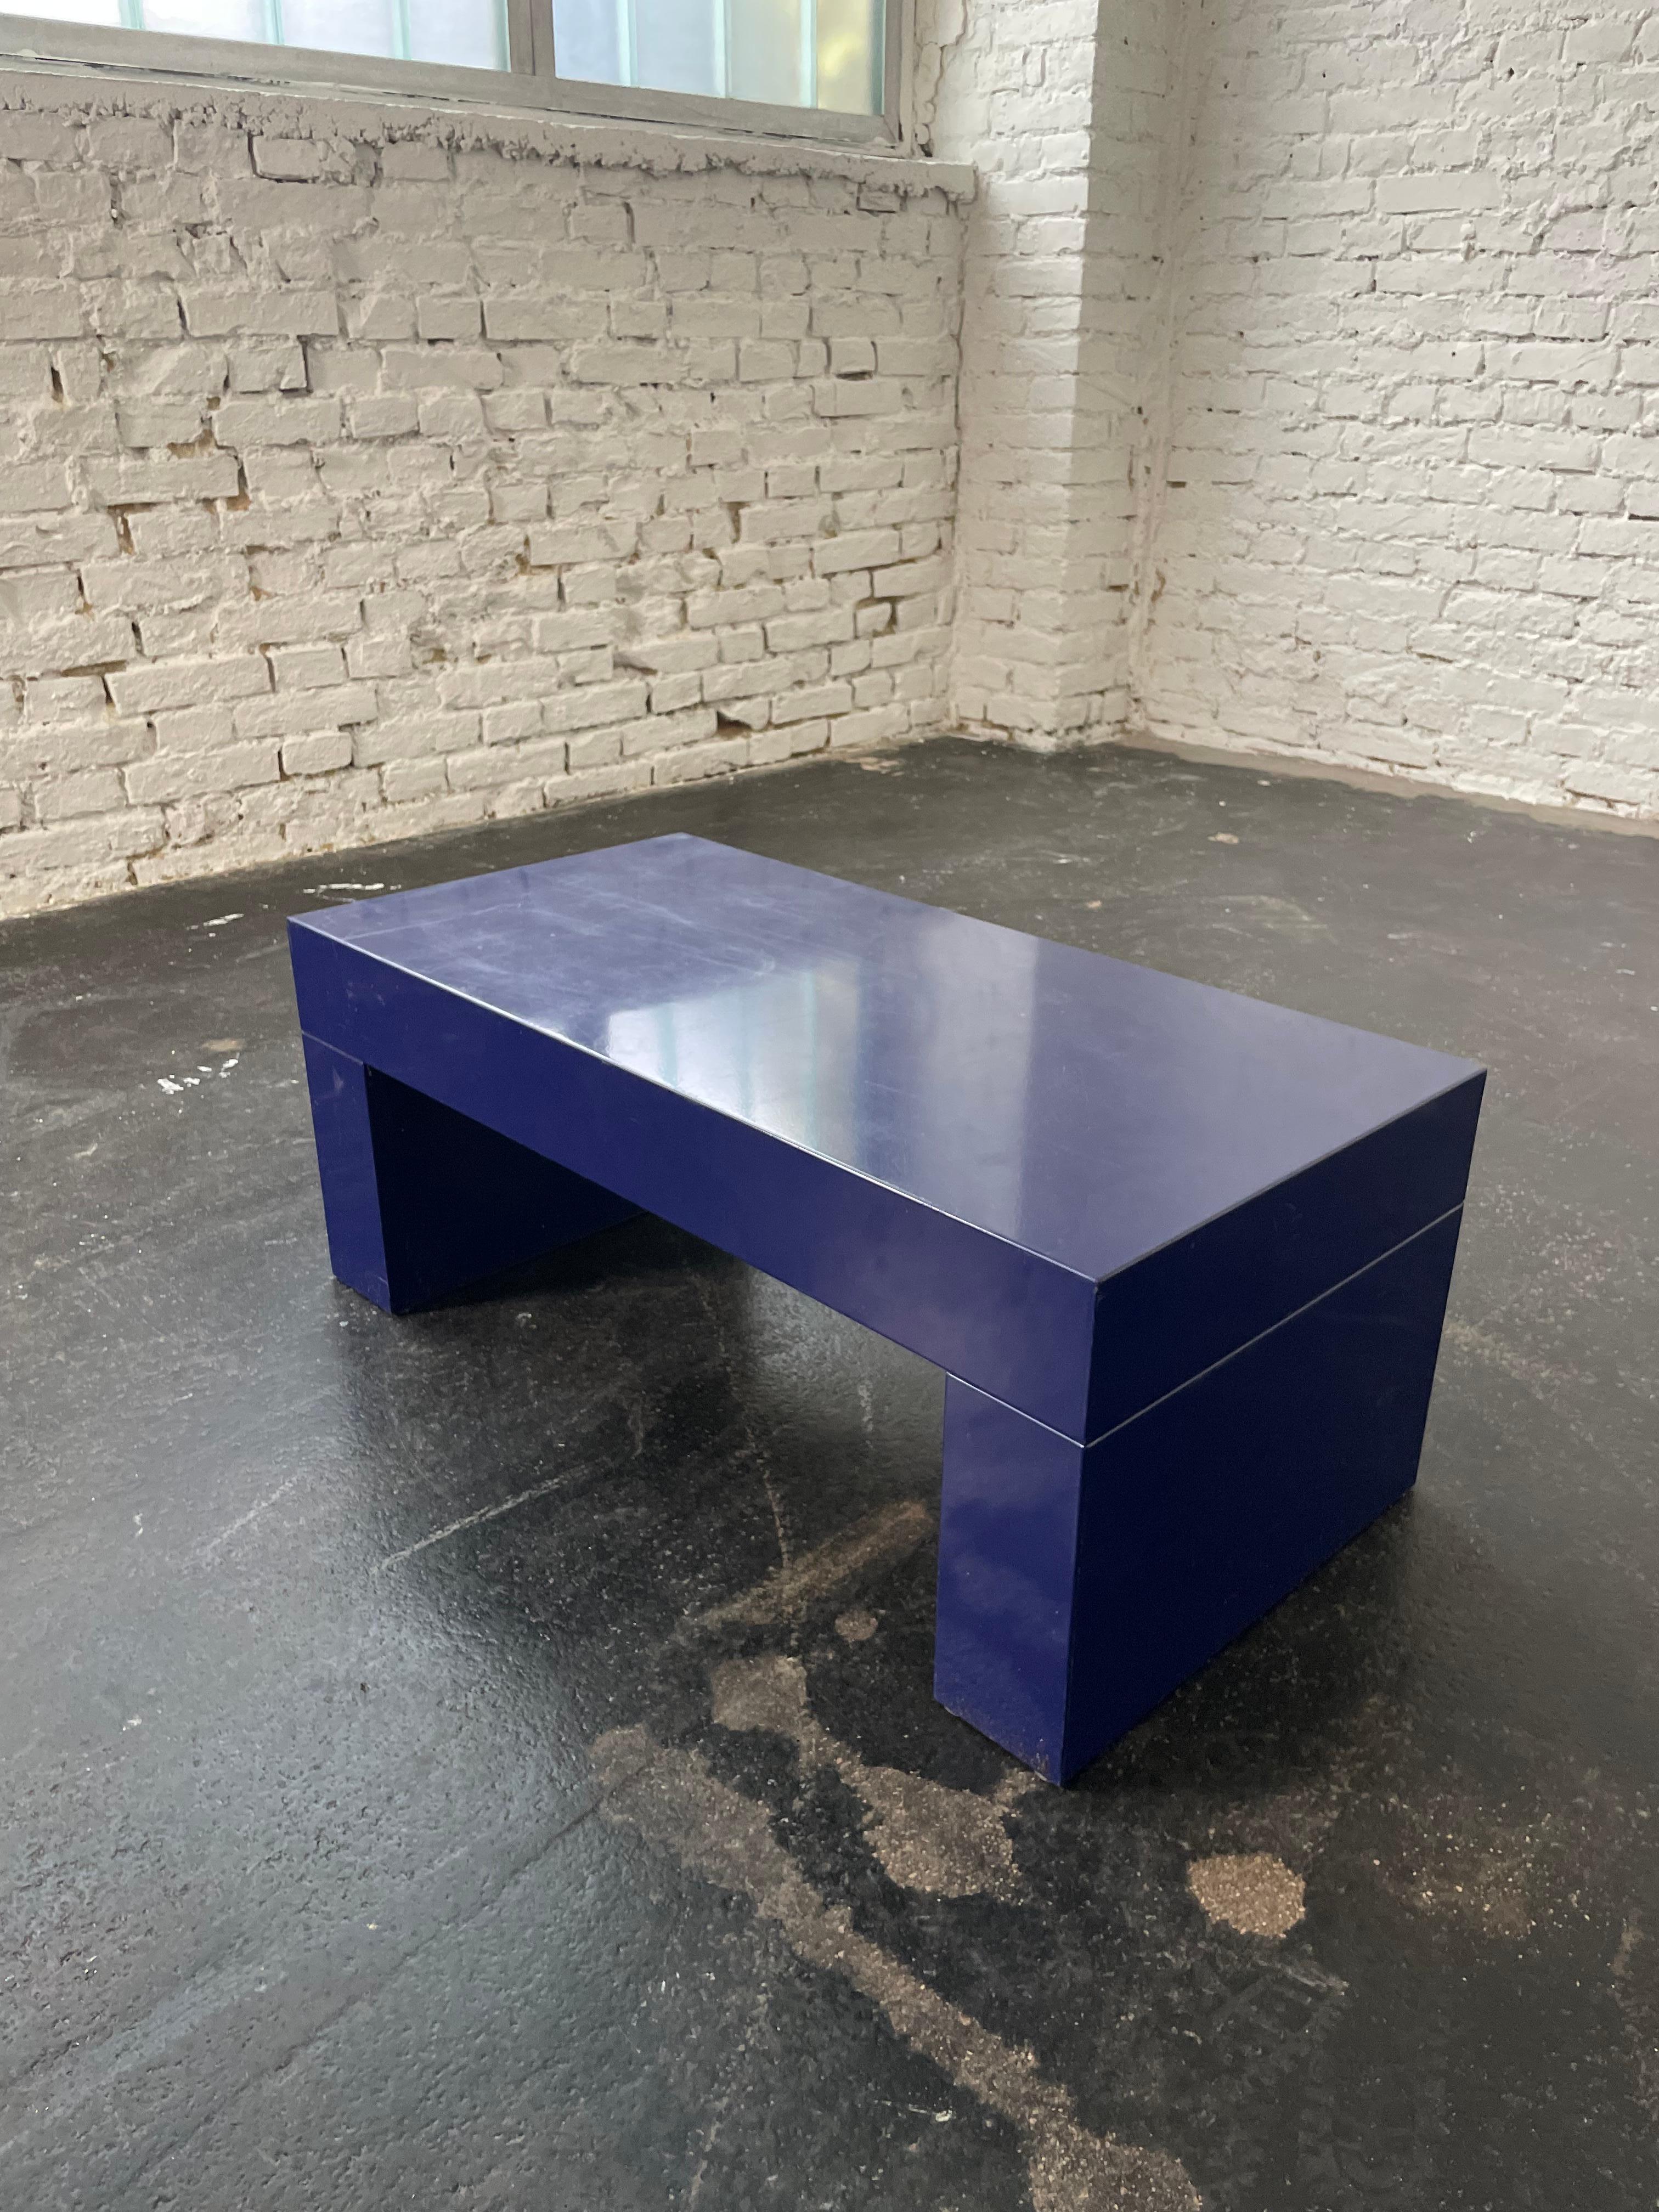 Bench/ Coffee Table “Blue Bench” entworfen von Massimo Vignelli, hergestellt von Heller um circa 2010. Provenienz bedeutende Österreichische Privatsammlung.

Designer: attr Massimo Vignelli 
Modell: Blue Bench 
Hersteller: attr